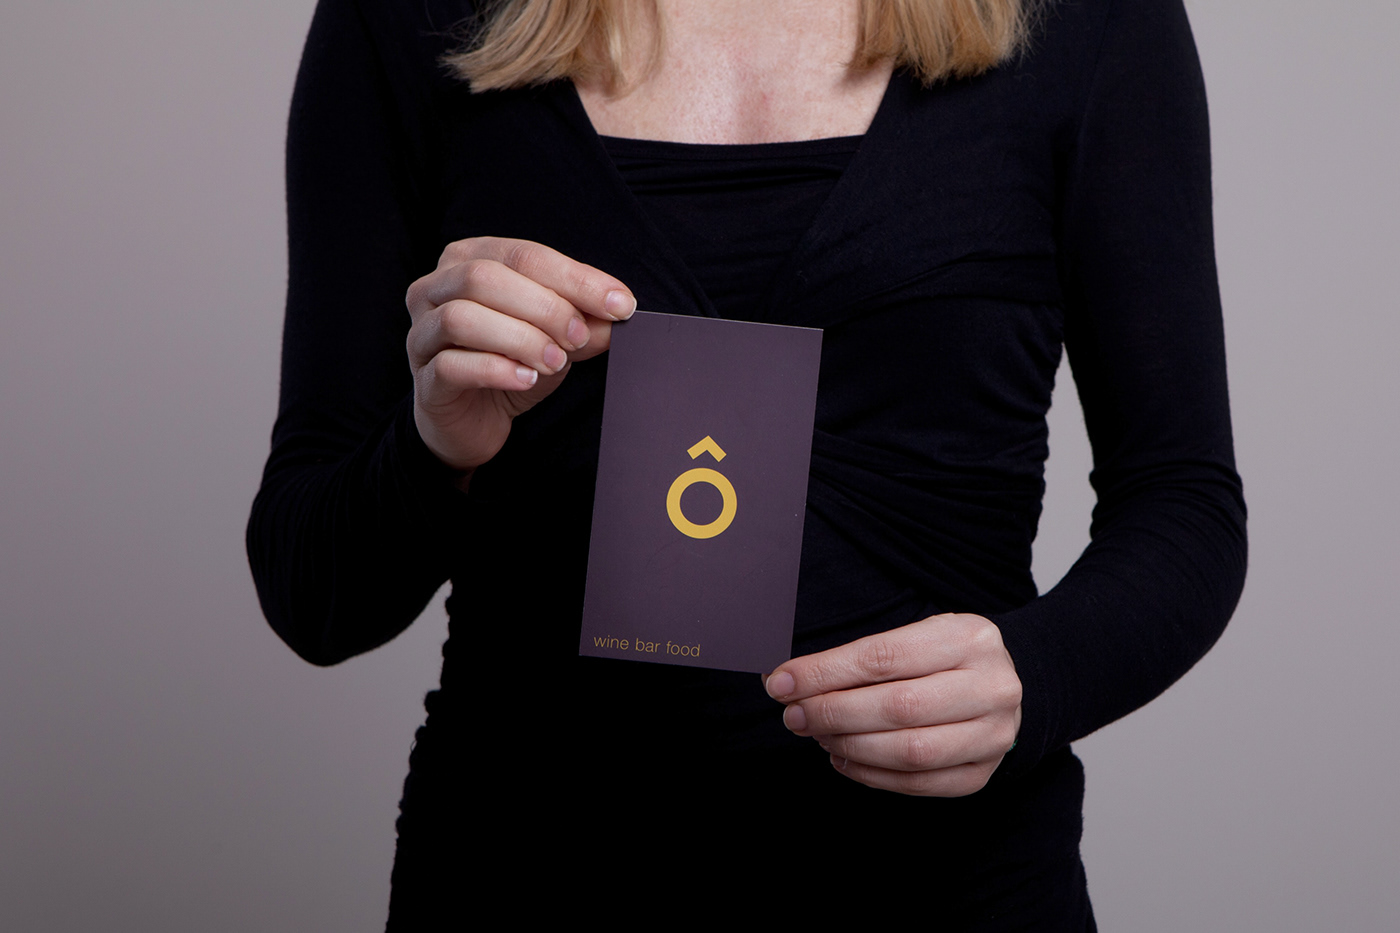 ô bar Switzerland swiss Basel bar minimalist flyer business card Menu Card logo Matchbook